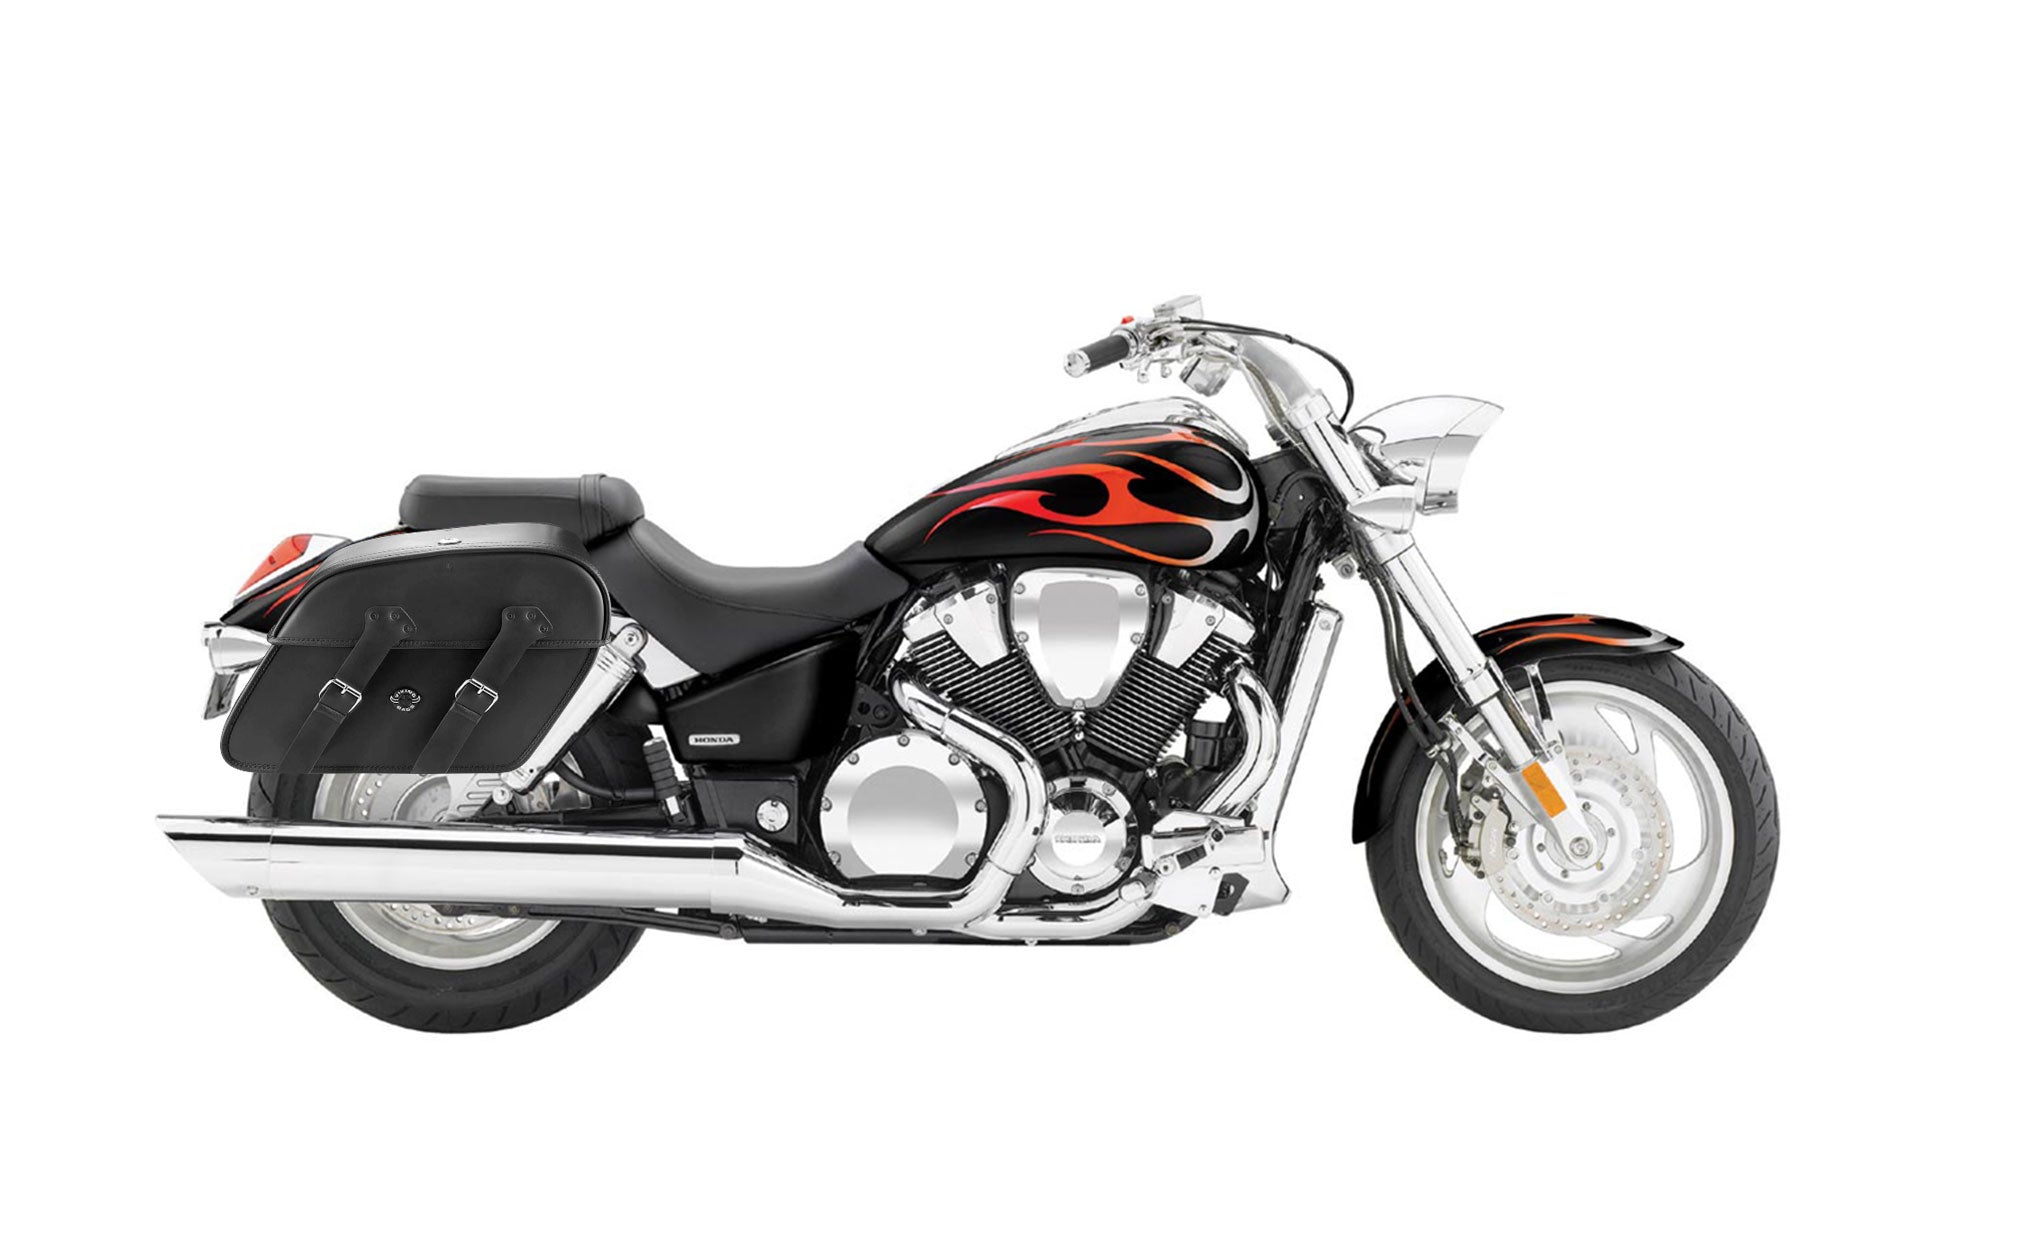 Viking Raven Extra Large Honda Vtx 1800 C Leather Motorcycle Saddlebags on Bike Photo @expand